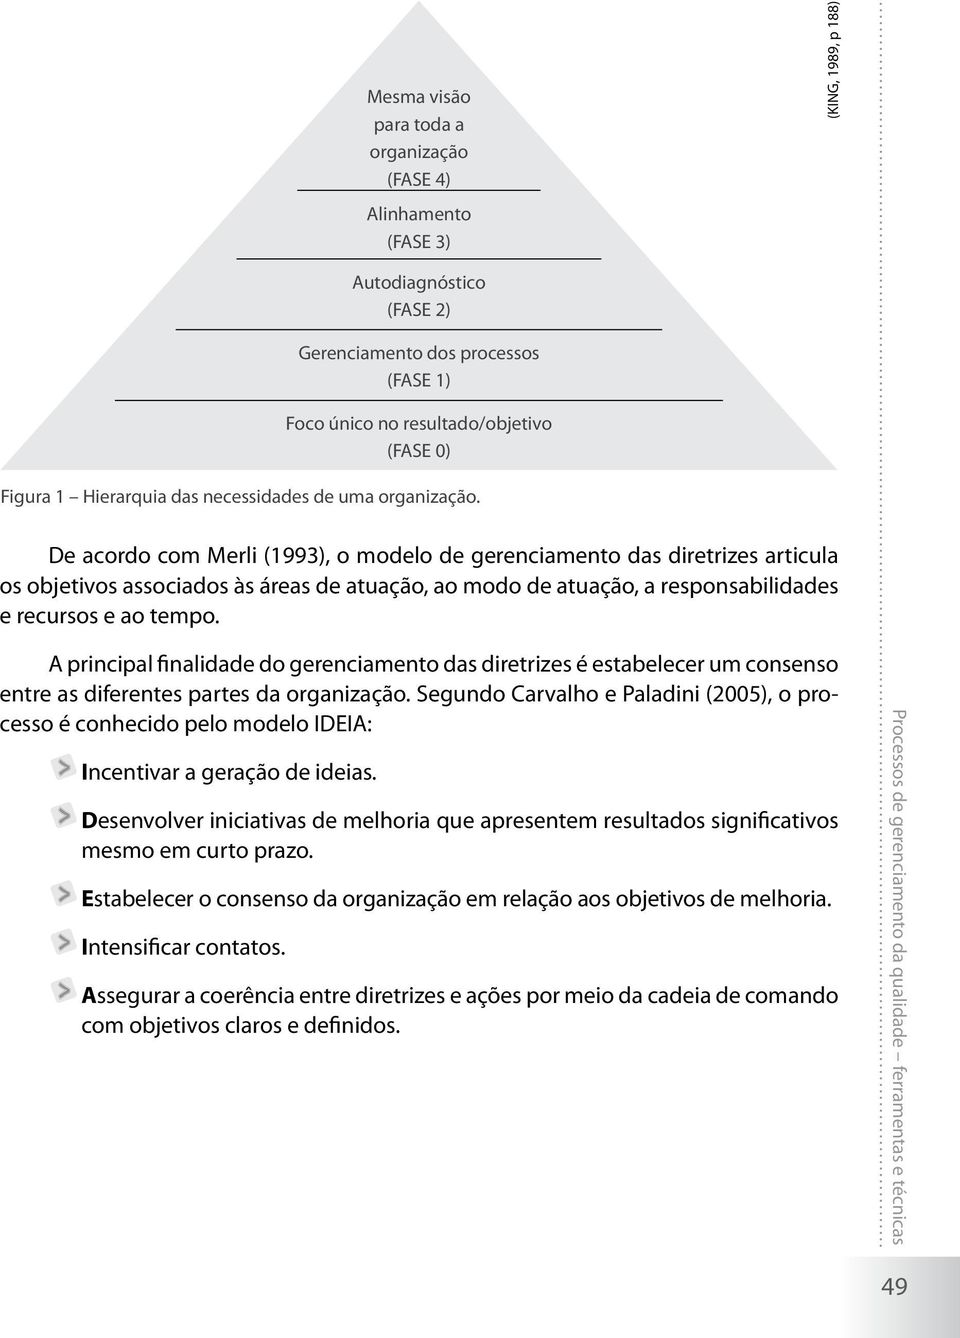 De acordo com Merli (1993), o modelo de gerenciamento das diretrizes articula os objetivos associados às áreas de atuação, ao modo de atuação, a responsabilidades e recursos e ao tempo.